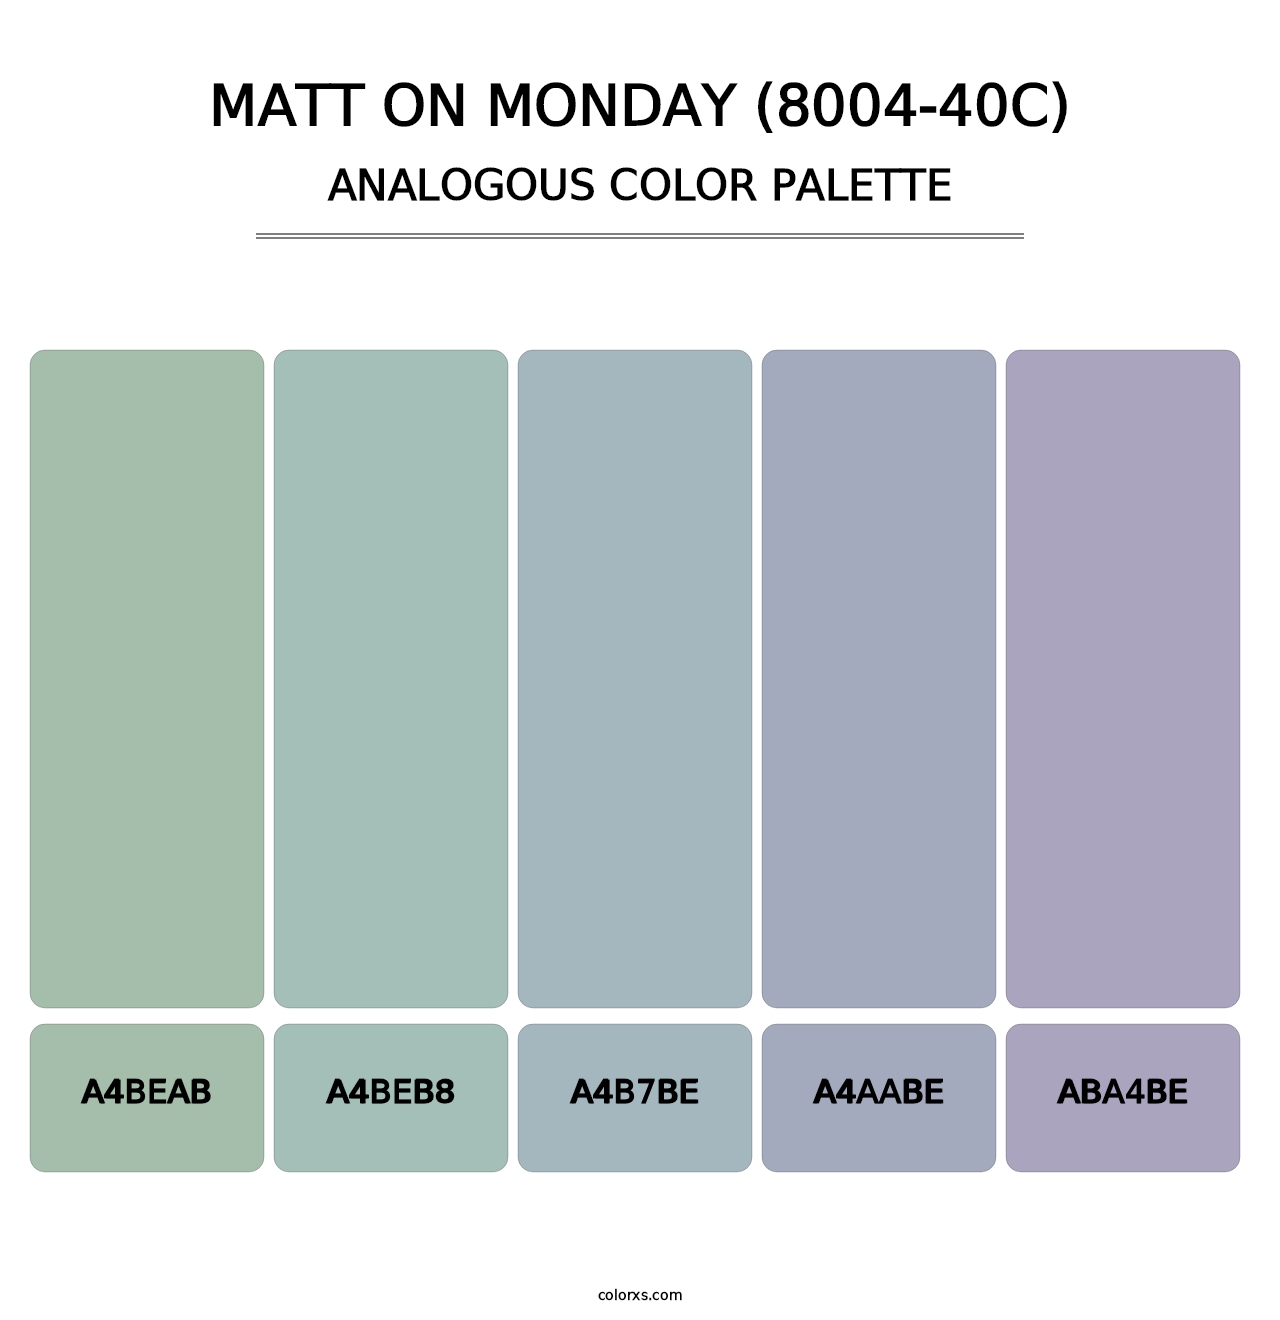 Matt on Monday (8004-40C) - Analogous Color Palette